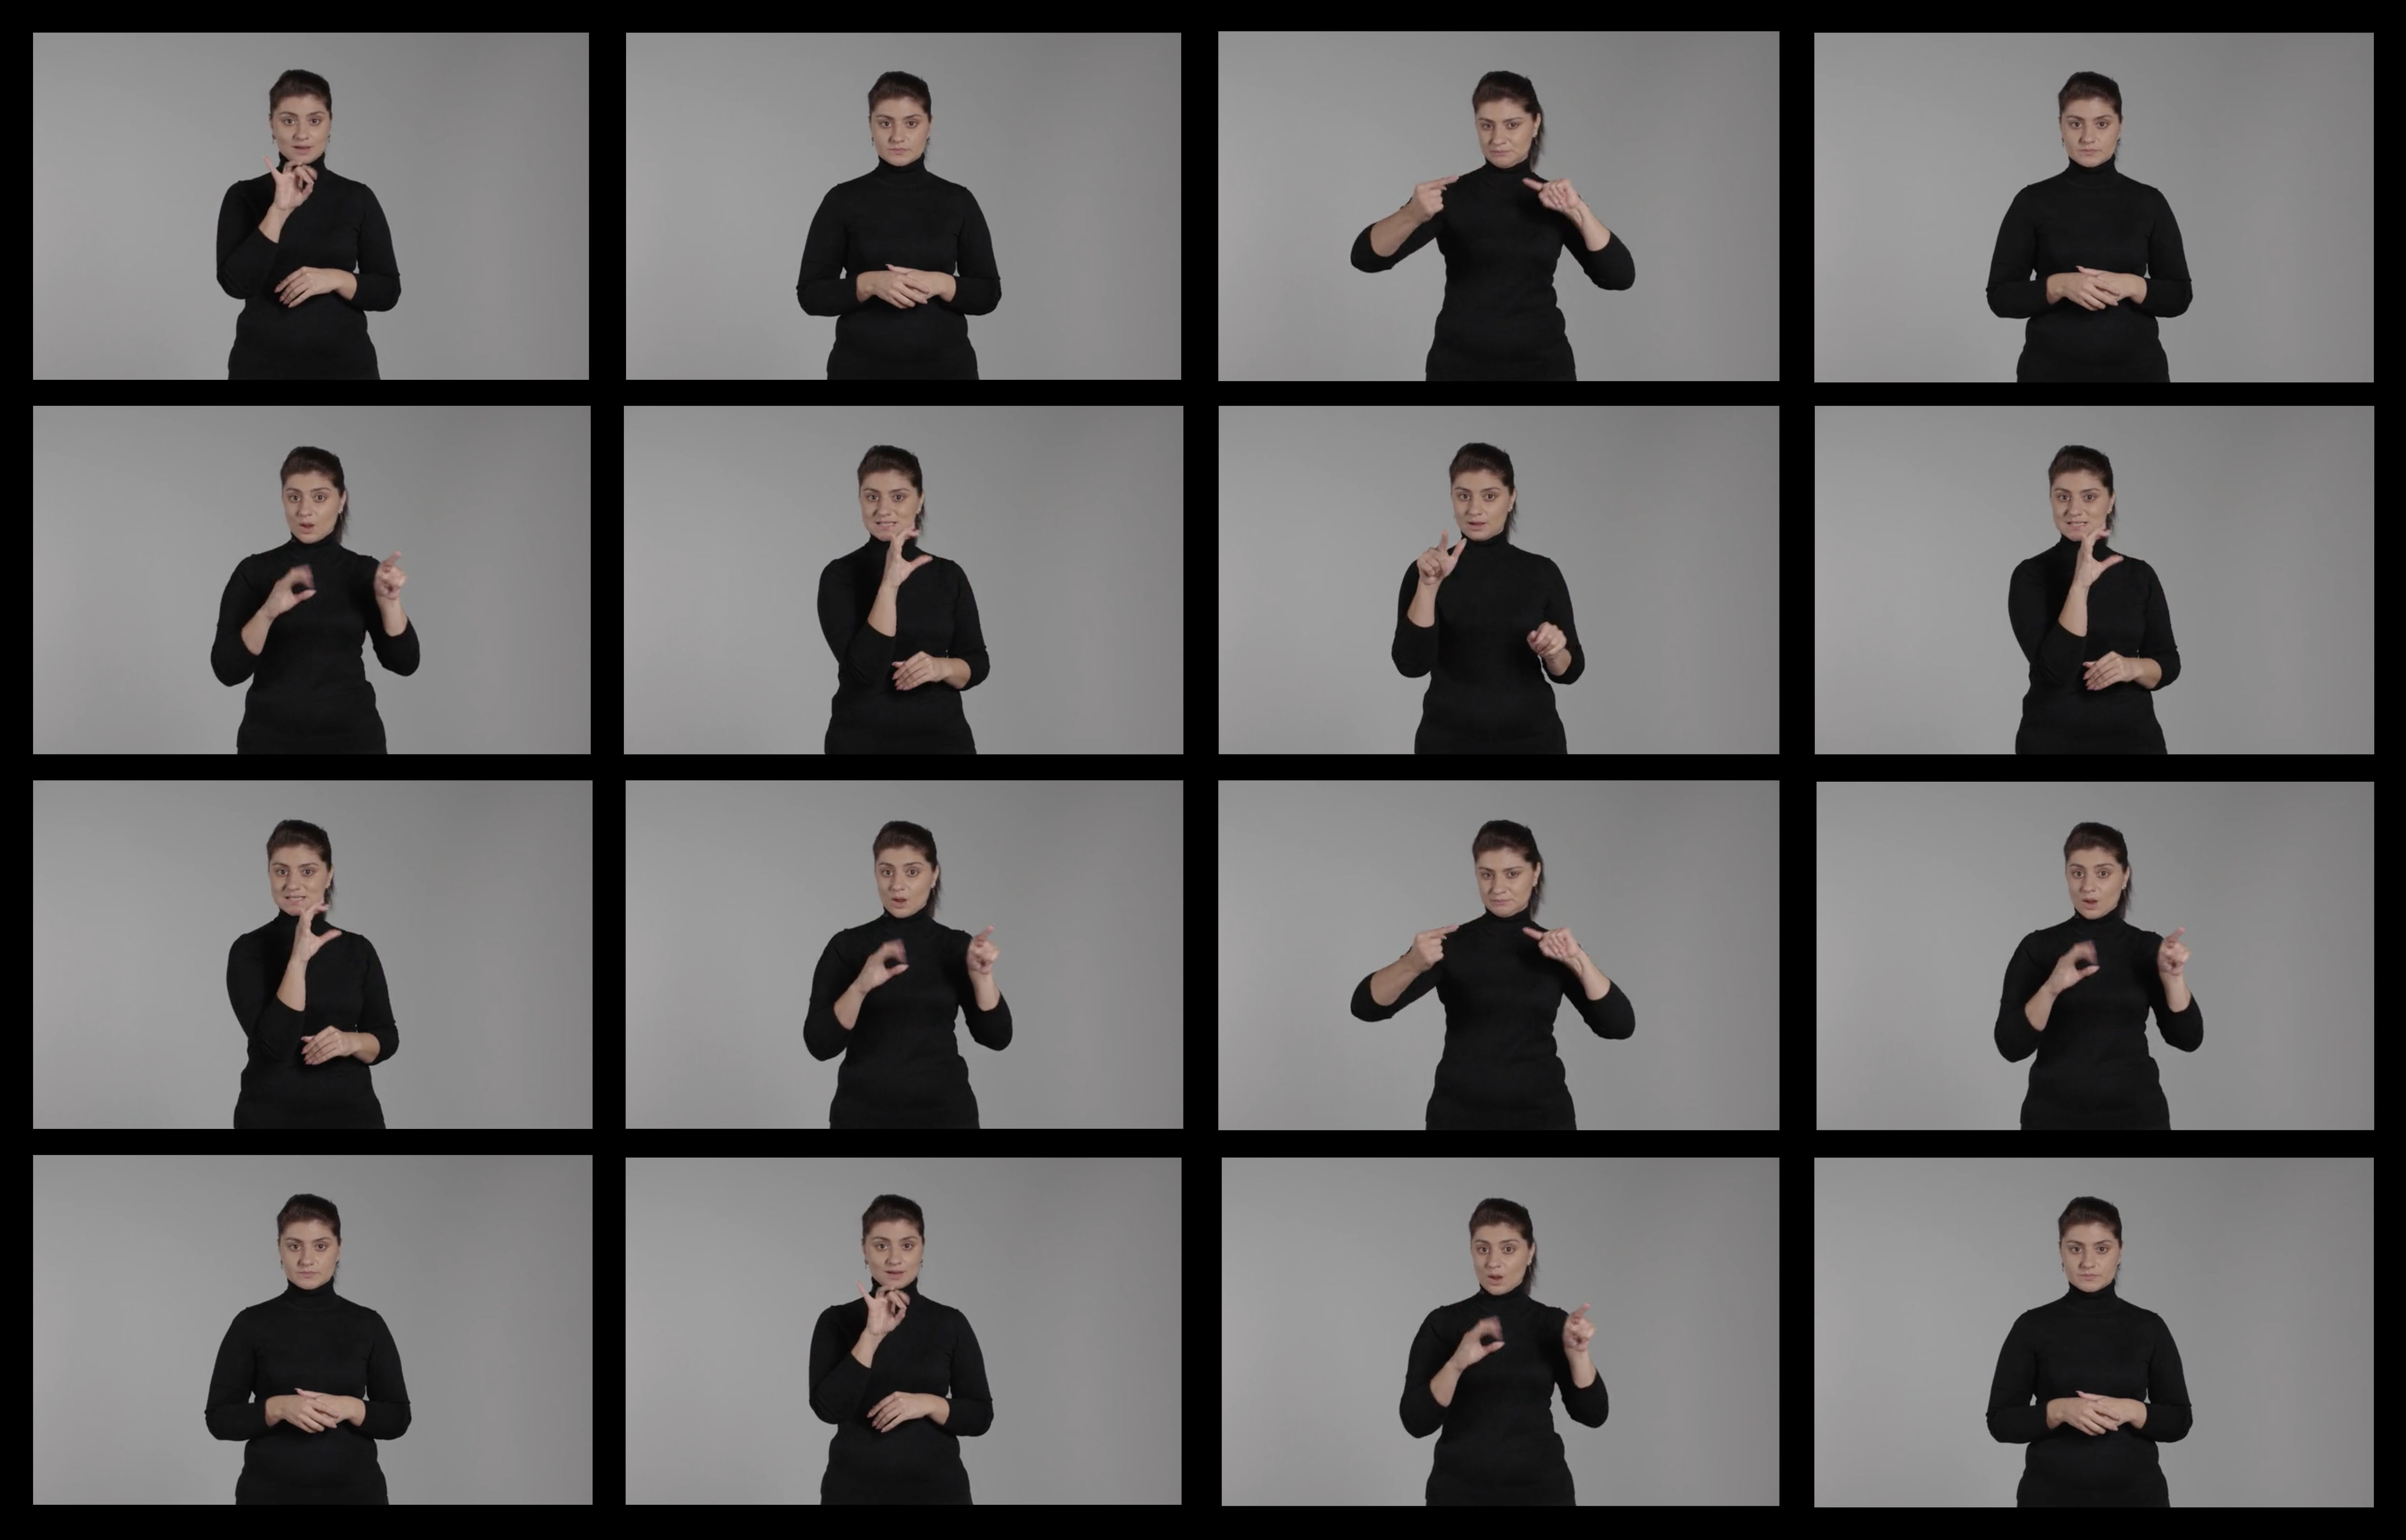  коллаж с изображениями человека, показывающего разные жесты на РЖЯ